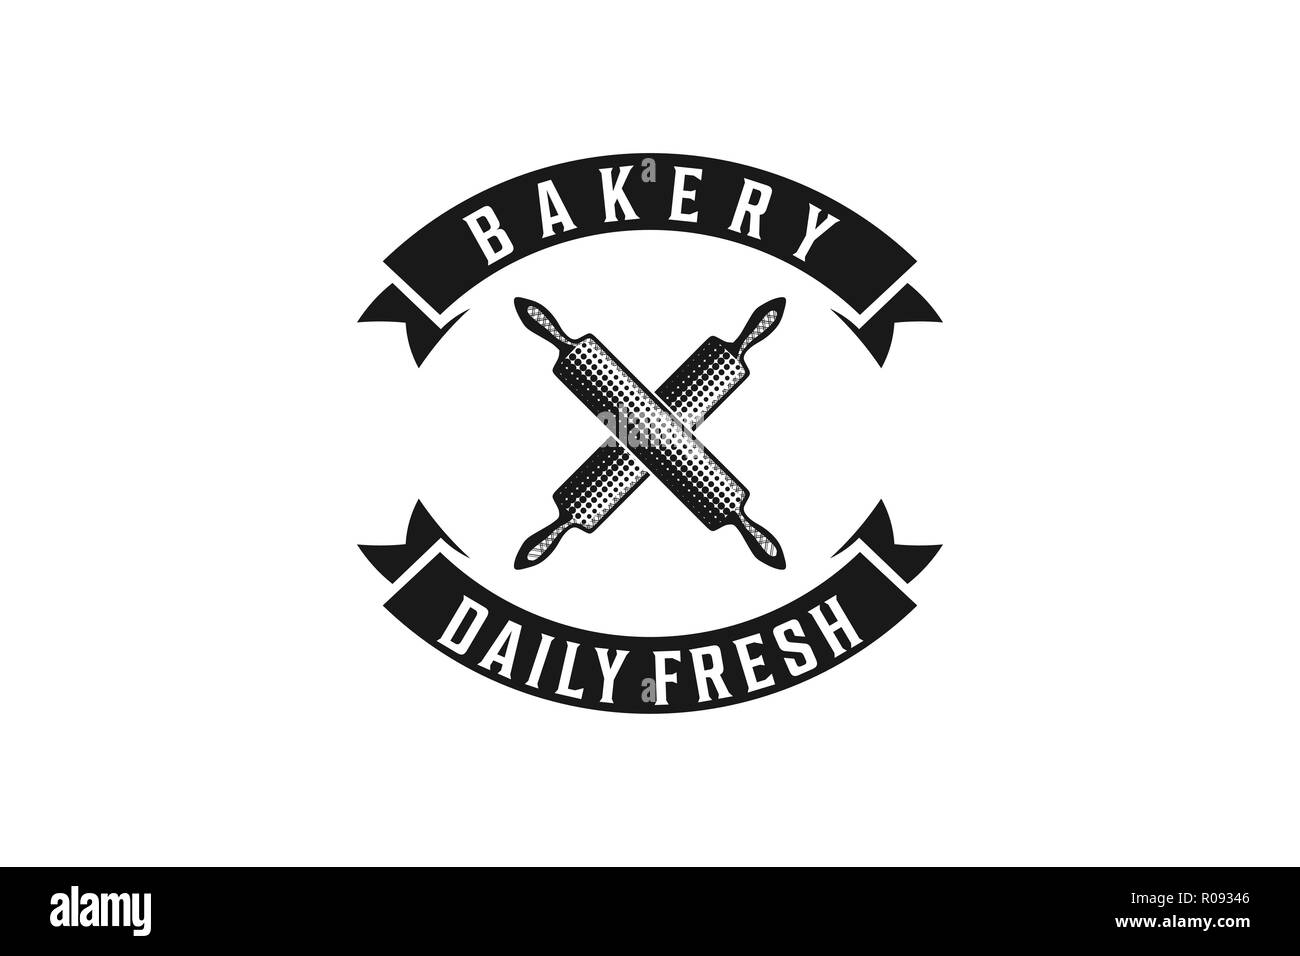 Rolling Pin gekreuzt, vintage Bäckerei Logo Designs Inspiration isoliert auf weißem Hintergrund Stock Vektor